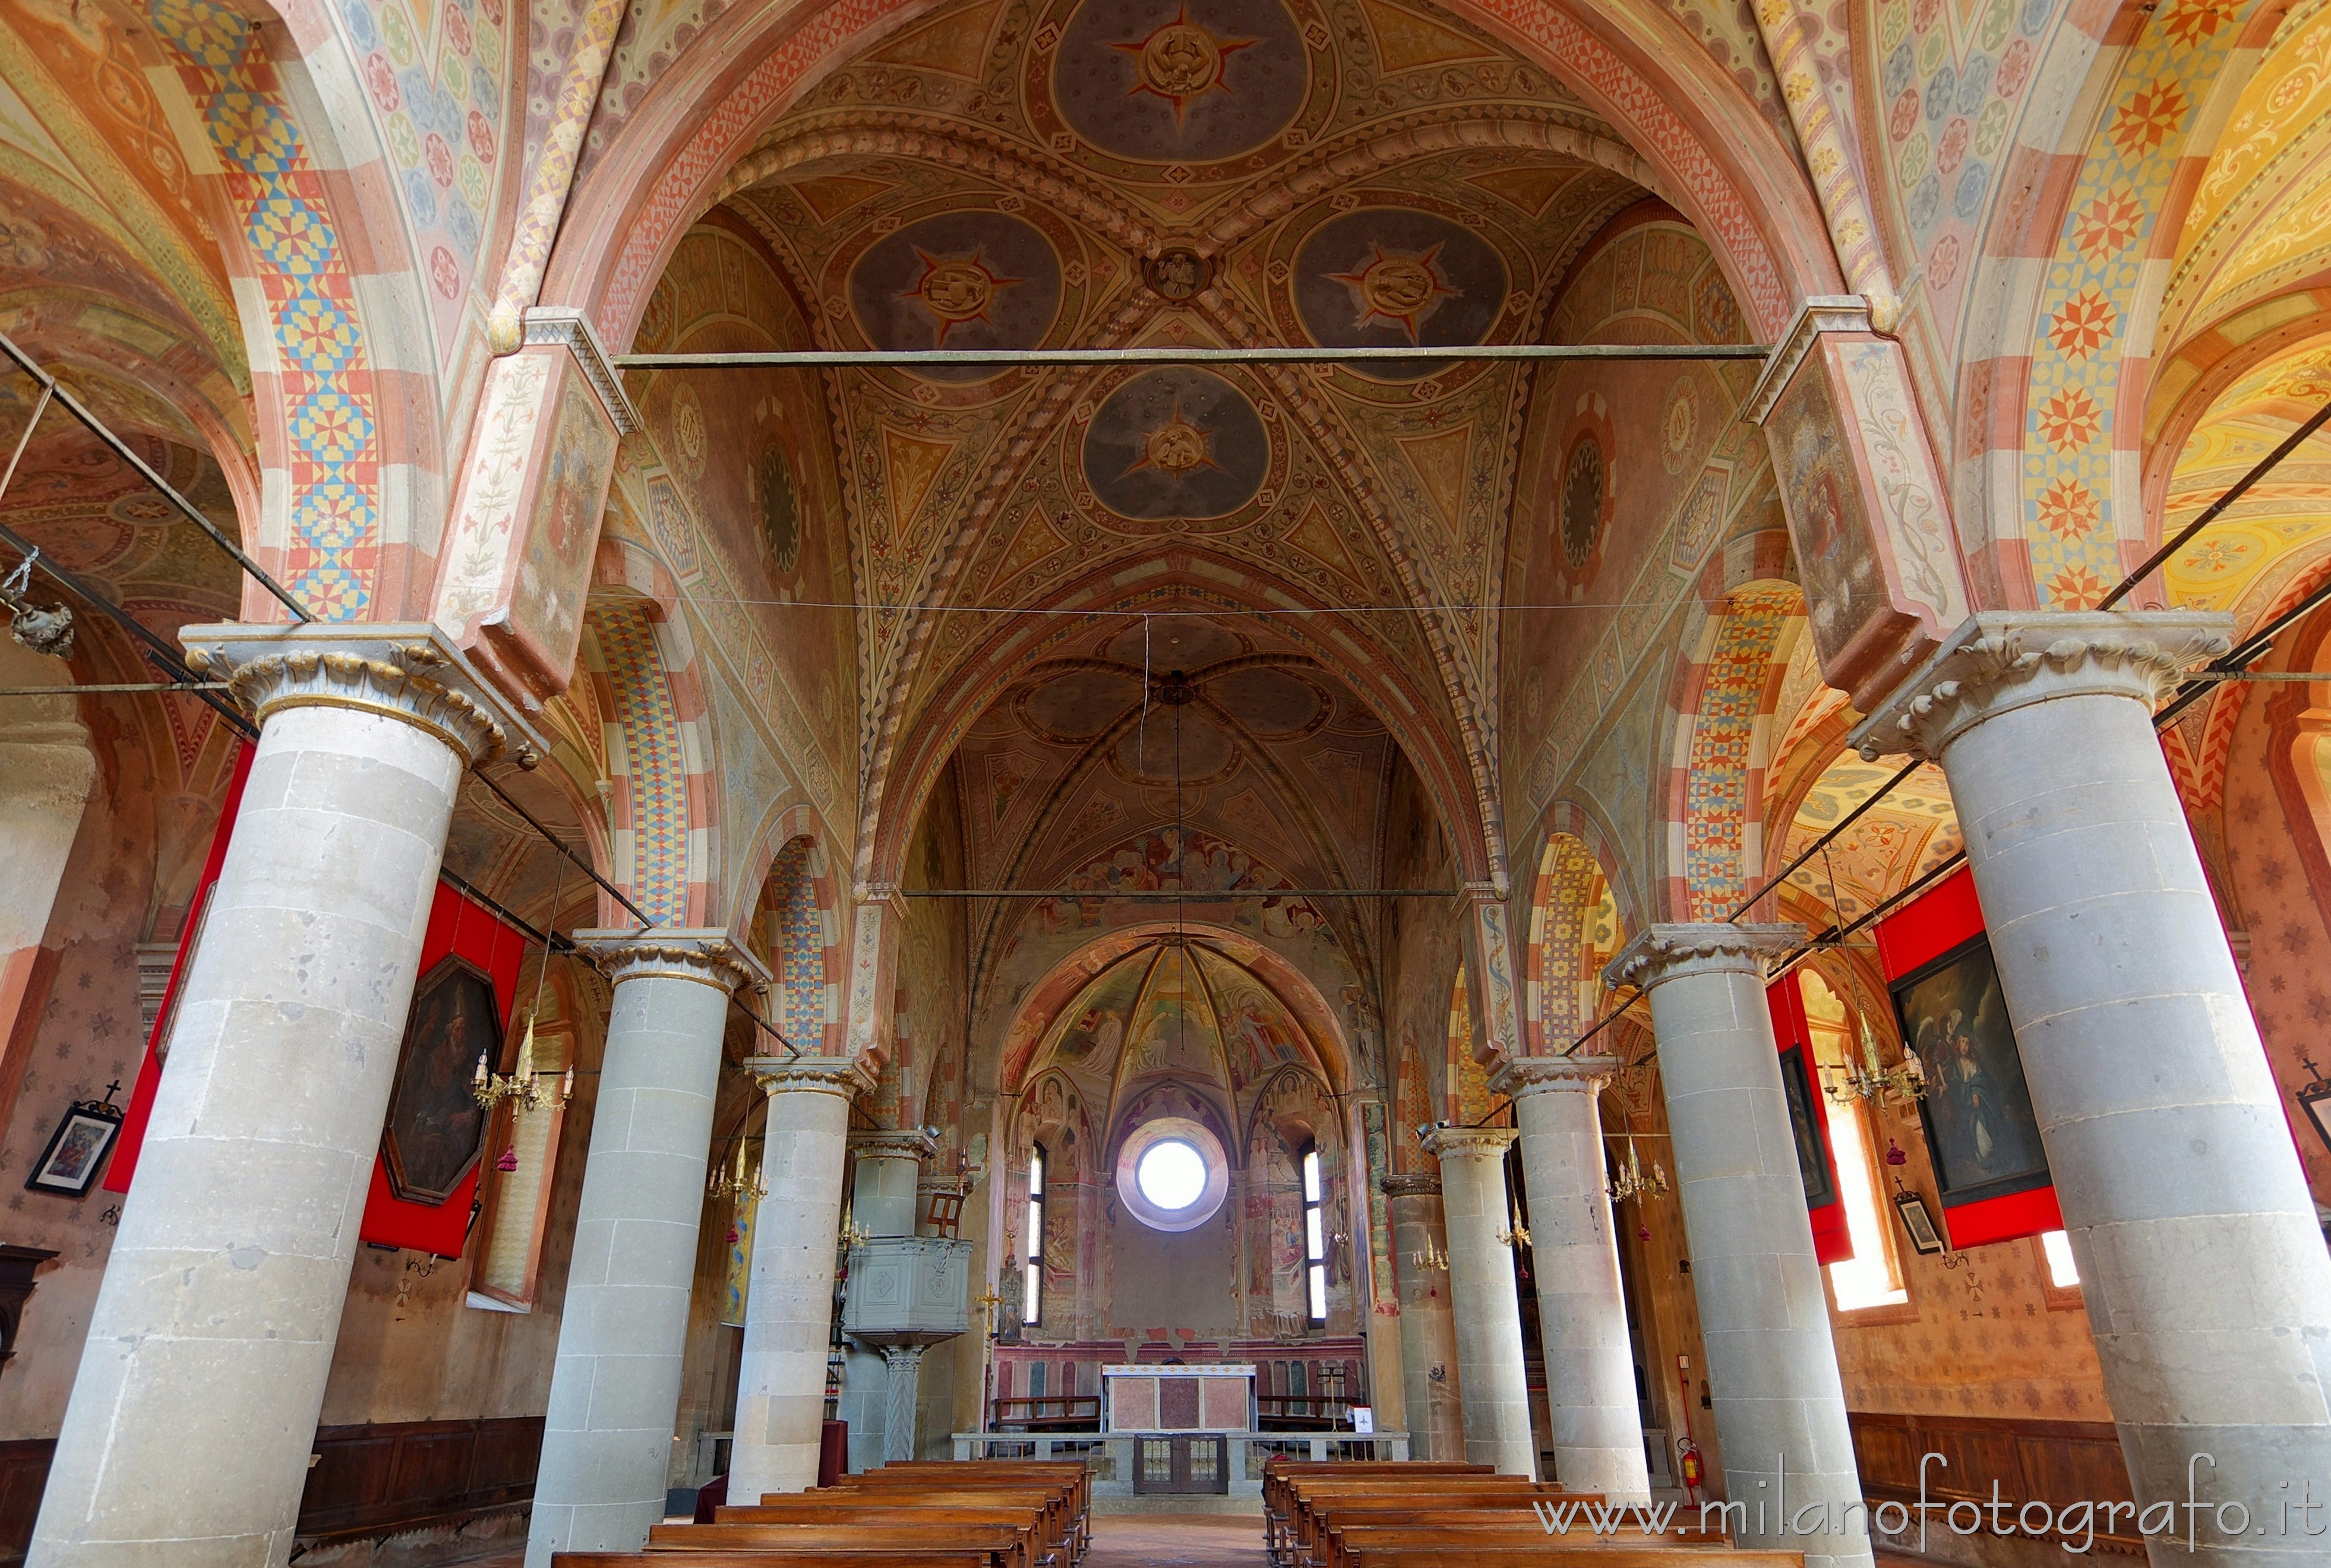 Castiglione Olona (Varese): Interno della Chiesa Collegiata dei Santi Stefano e Lorenzo - Castiglione Olona (Varese)